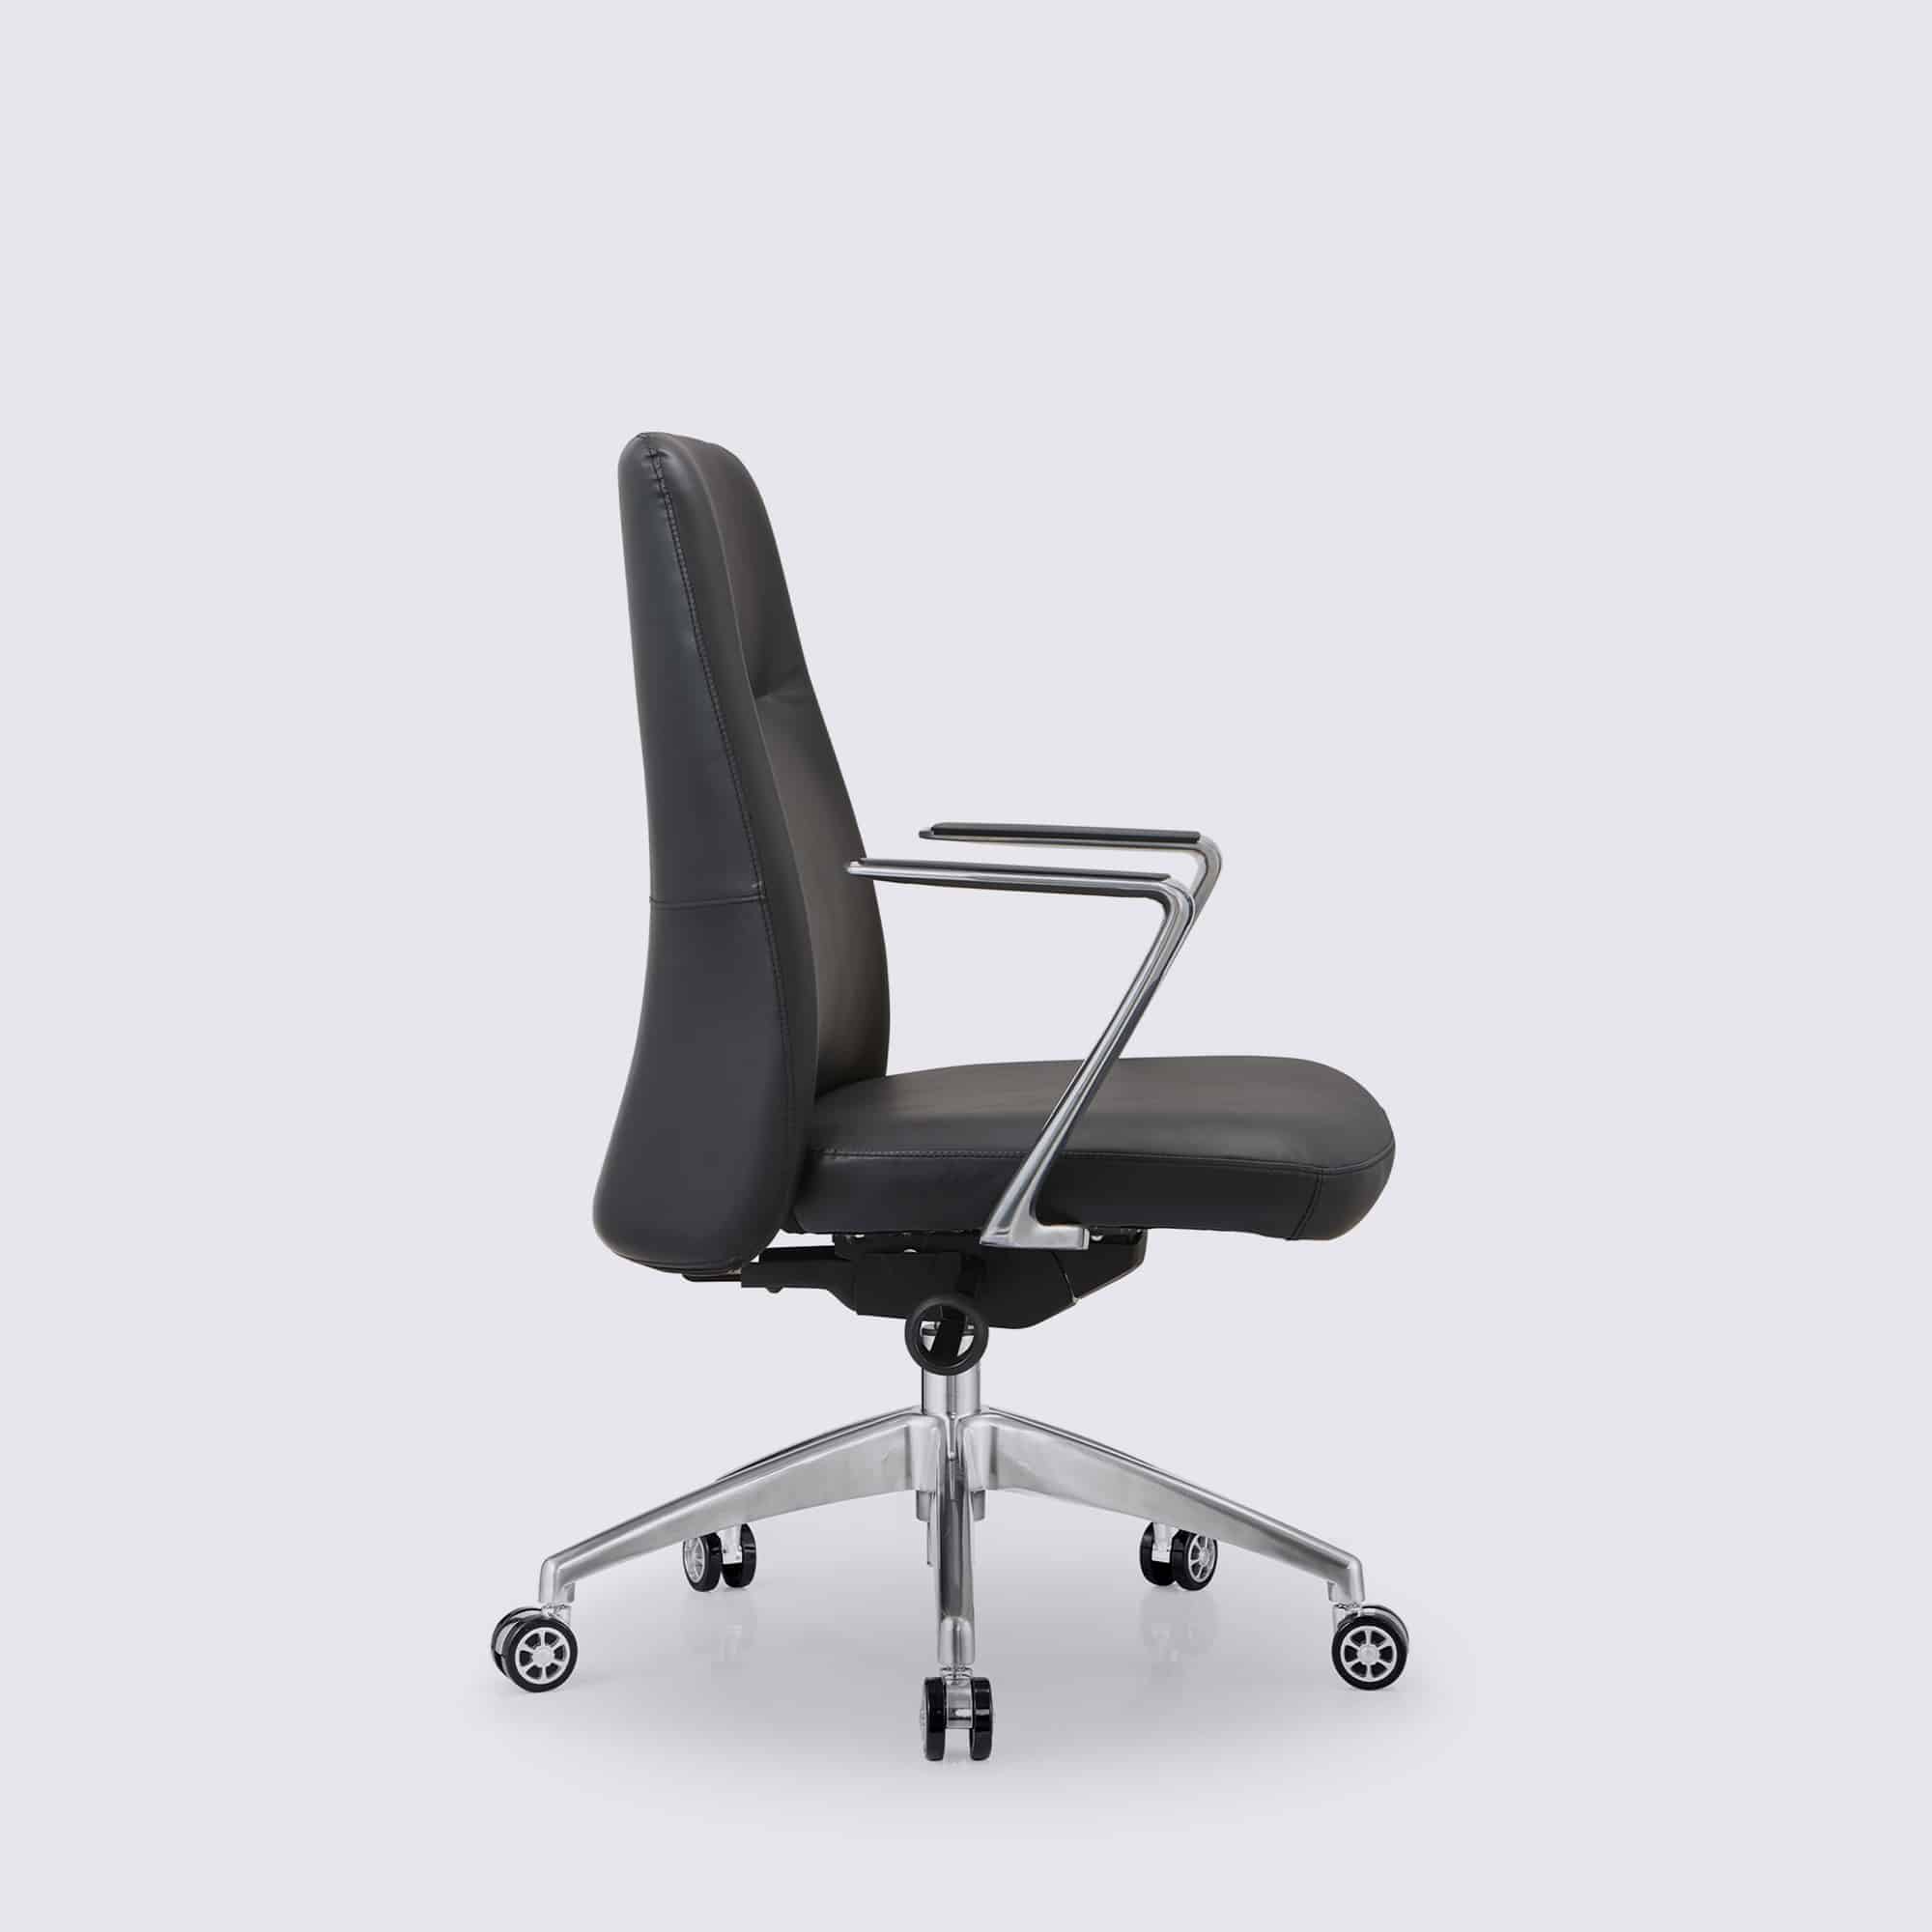 Soldes Chaise ergonomique - la qualité au meilleur prix